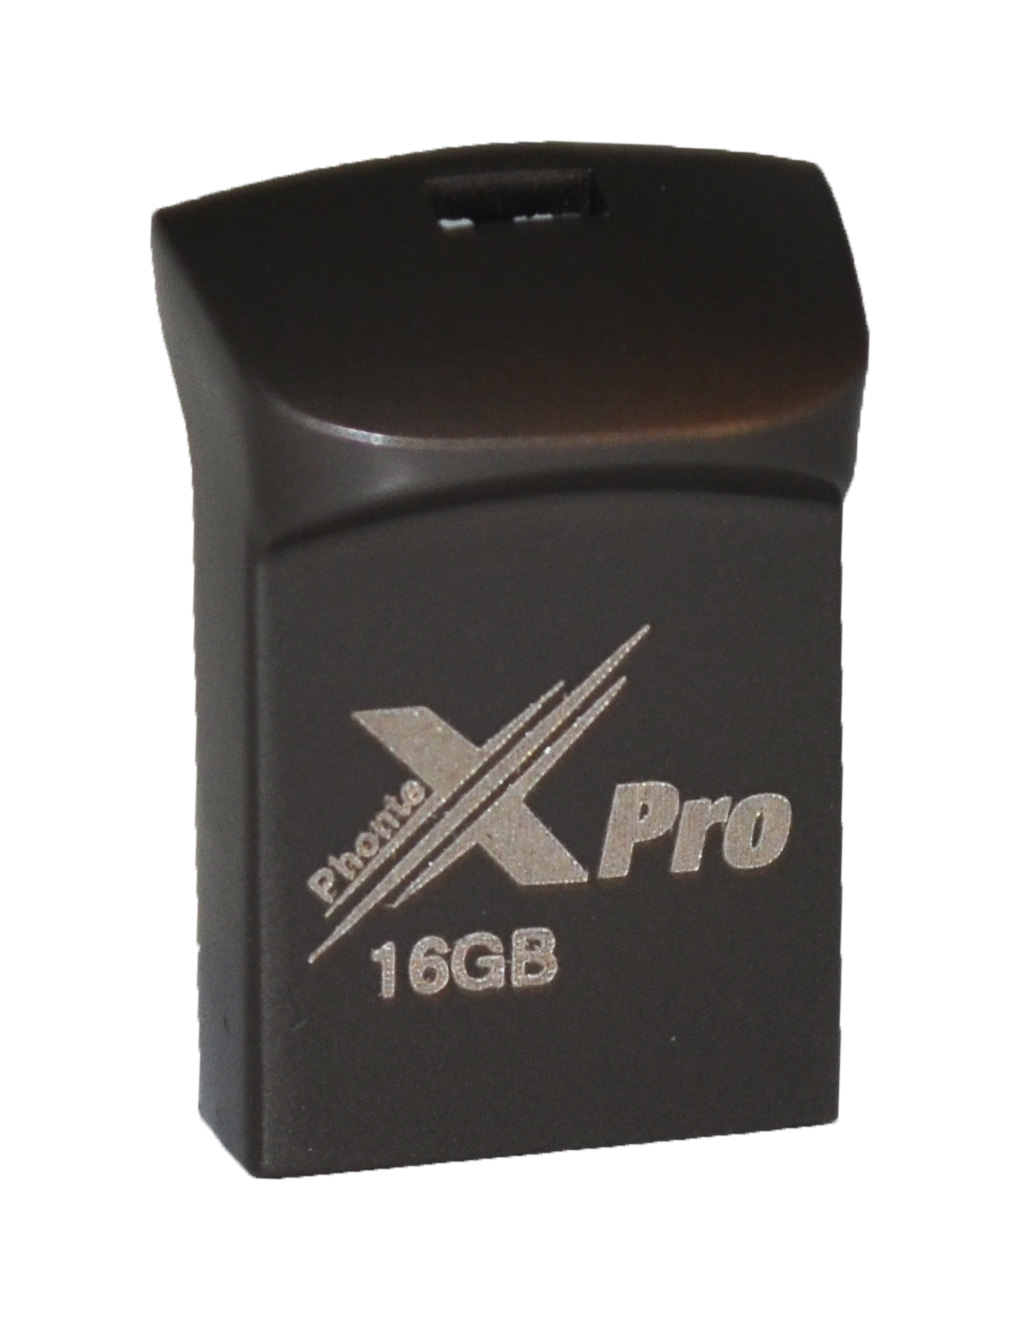 خريد آنلاين فلش PhonteX Pro مدل 16GB X1